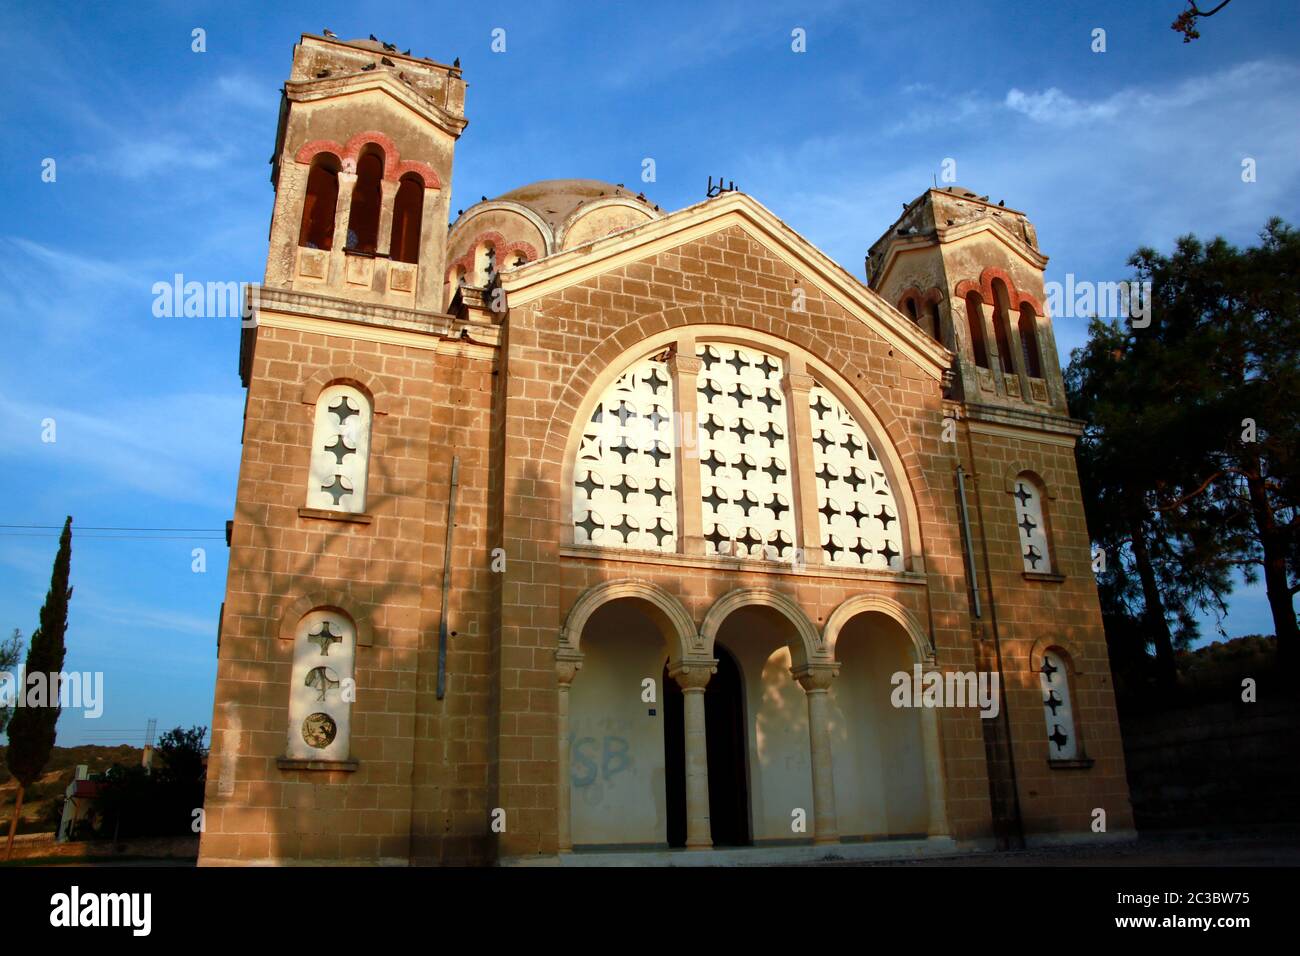 ehemalige, entweihte  griechisch orthodoxe Kirche, Pamuklu/ Tavors, Türkische Republik Nordzypern Stock Photo